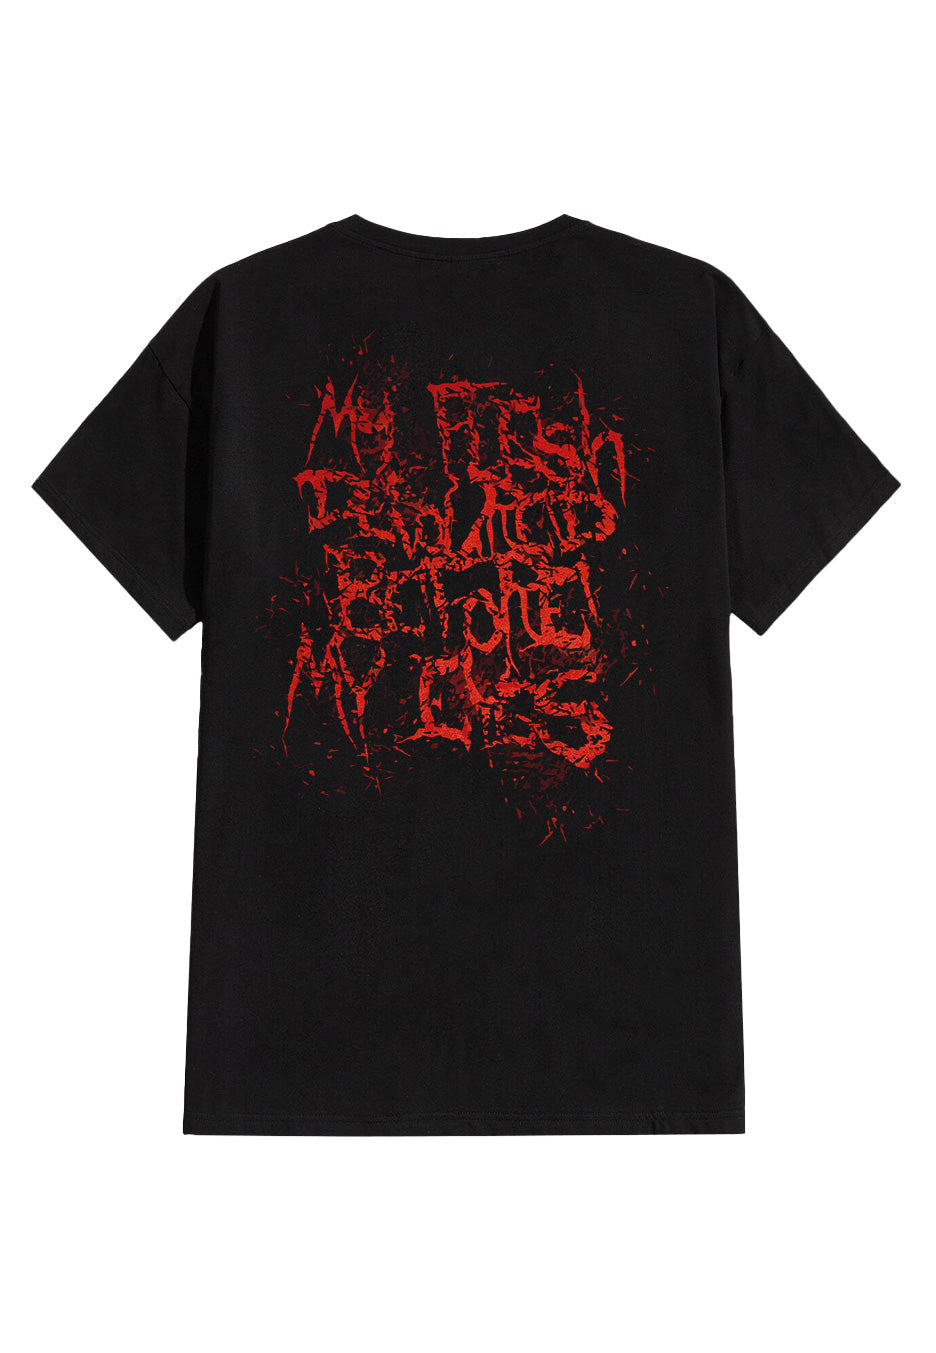 Bloodbath - Eaten - T-Shirt